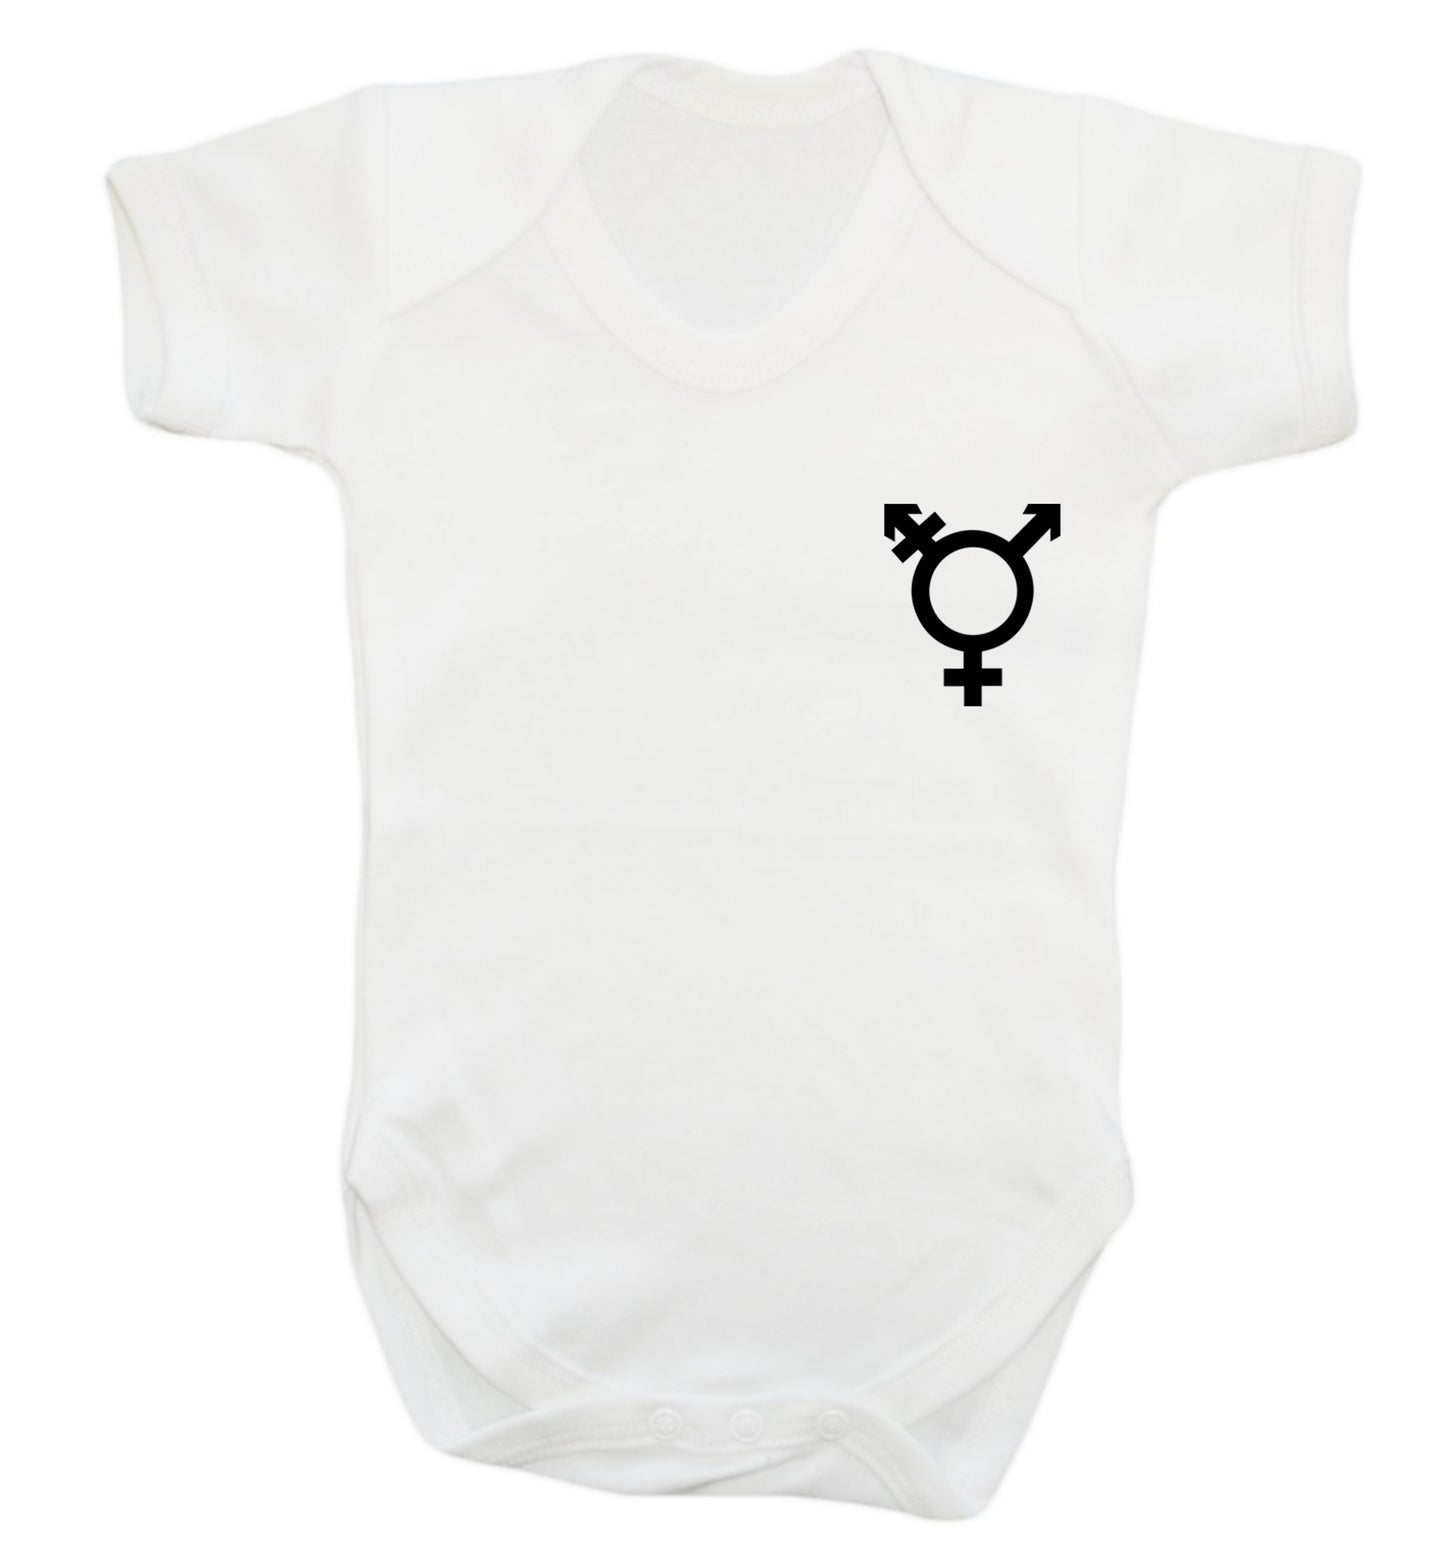 Trans gender symbol pocket Baby Vest white 18-24 months